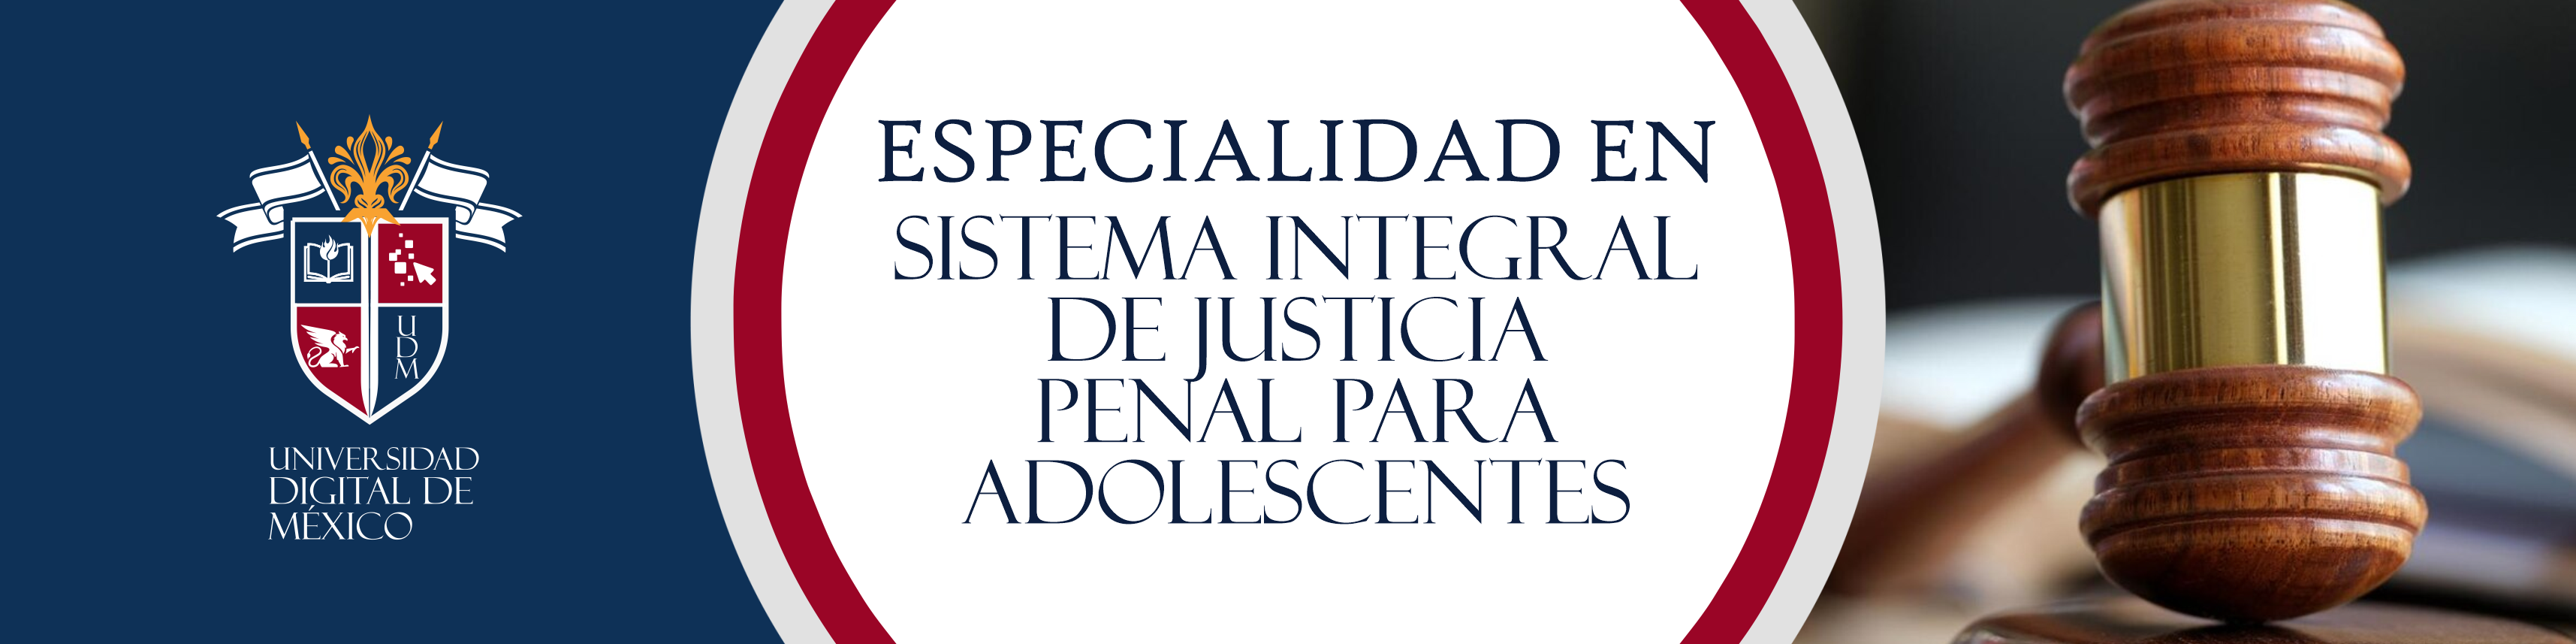 Especialidad en Sistema Integral de Justicia Penal para Adolescentes.